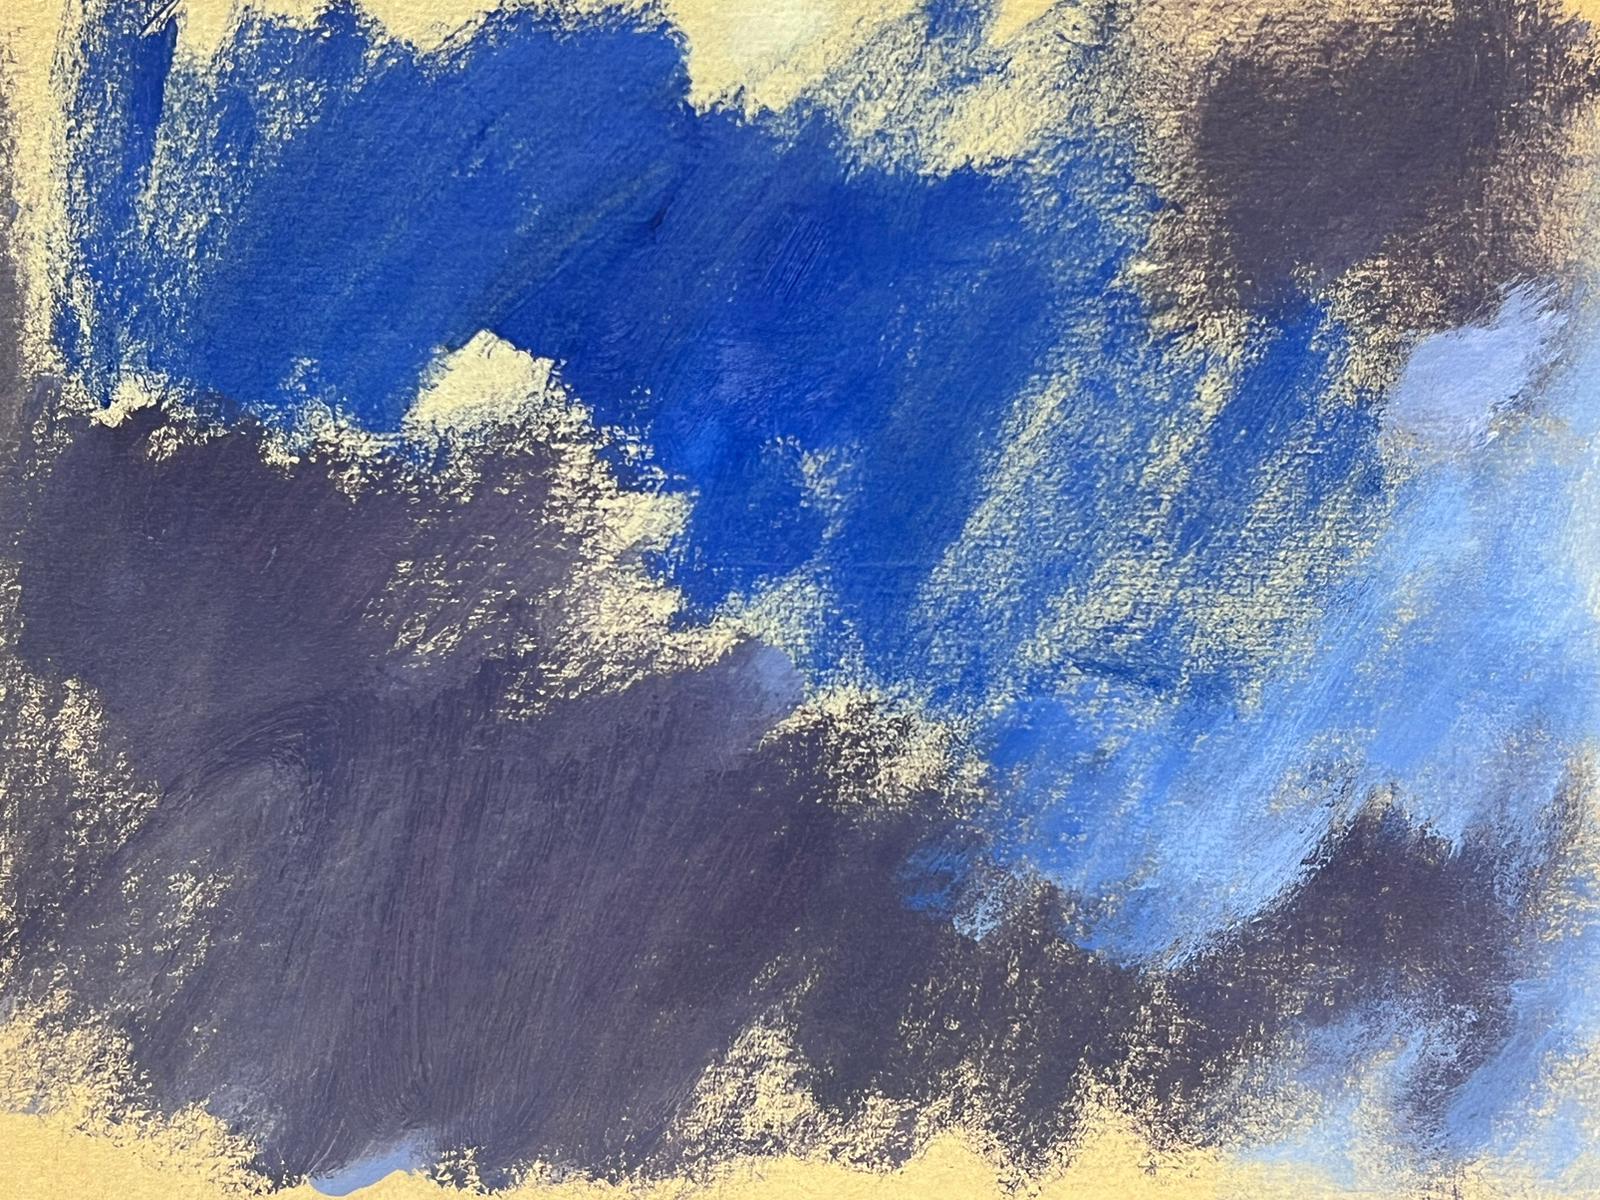 Deutsche modernistisches Ölgemälde des 20. Jahrhunderts, Blaues und graues Himmelslandschaftsbild – Painting von Elisabeth Hahn